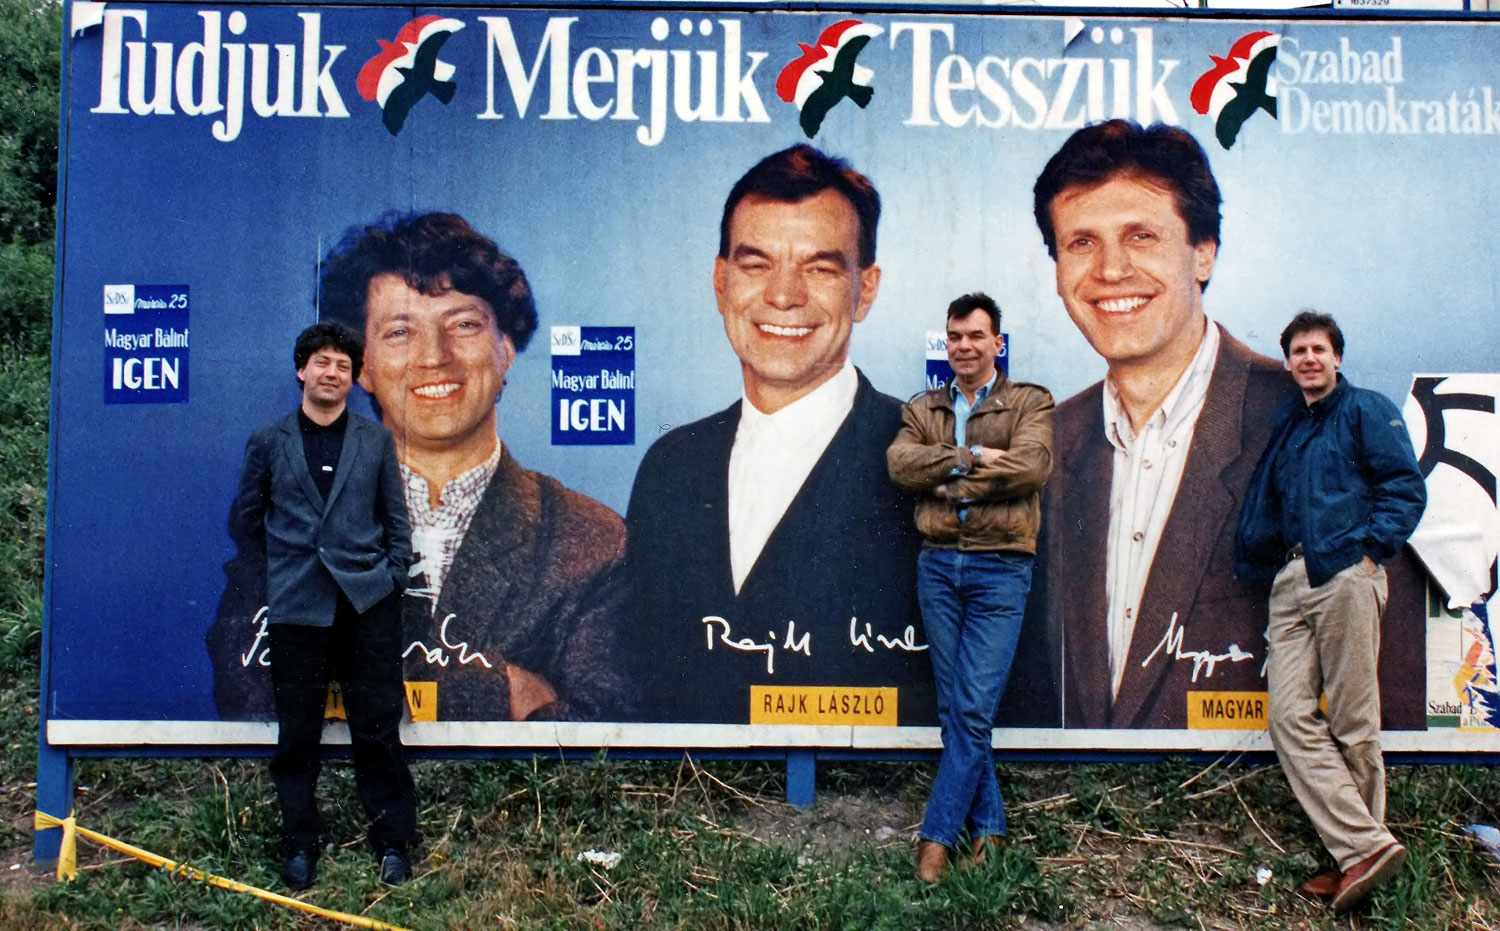 Amikor még a liberálisoknak volt okuk a mosolyra. Pető Iván, Rajk László, Magyar Bálint és Magyarország az 1990-es kampányban FOTÓ: HORNYAI ESZTER